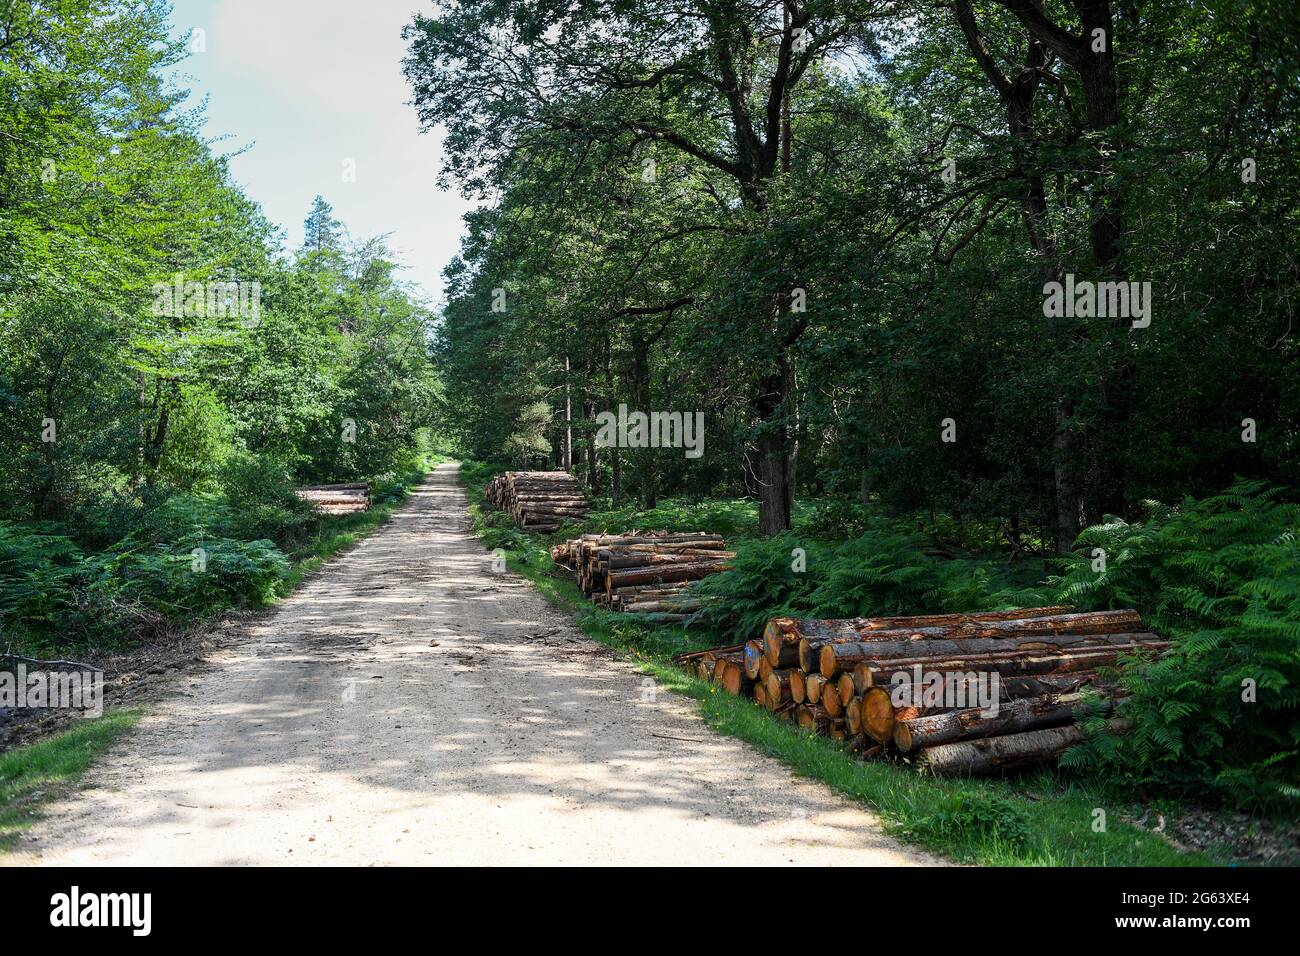 Waldmanagement im New Forest Hampshire Entfernen von Bäumen für die Holzproduktion und Wiederherstellung der natürlichen Lebensräume und Gesundheit des Waldes. Stockfoto